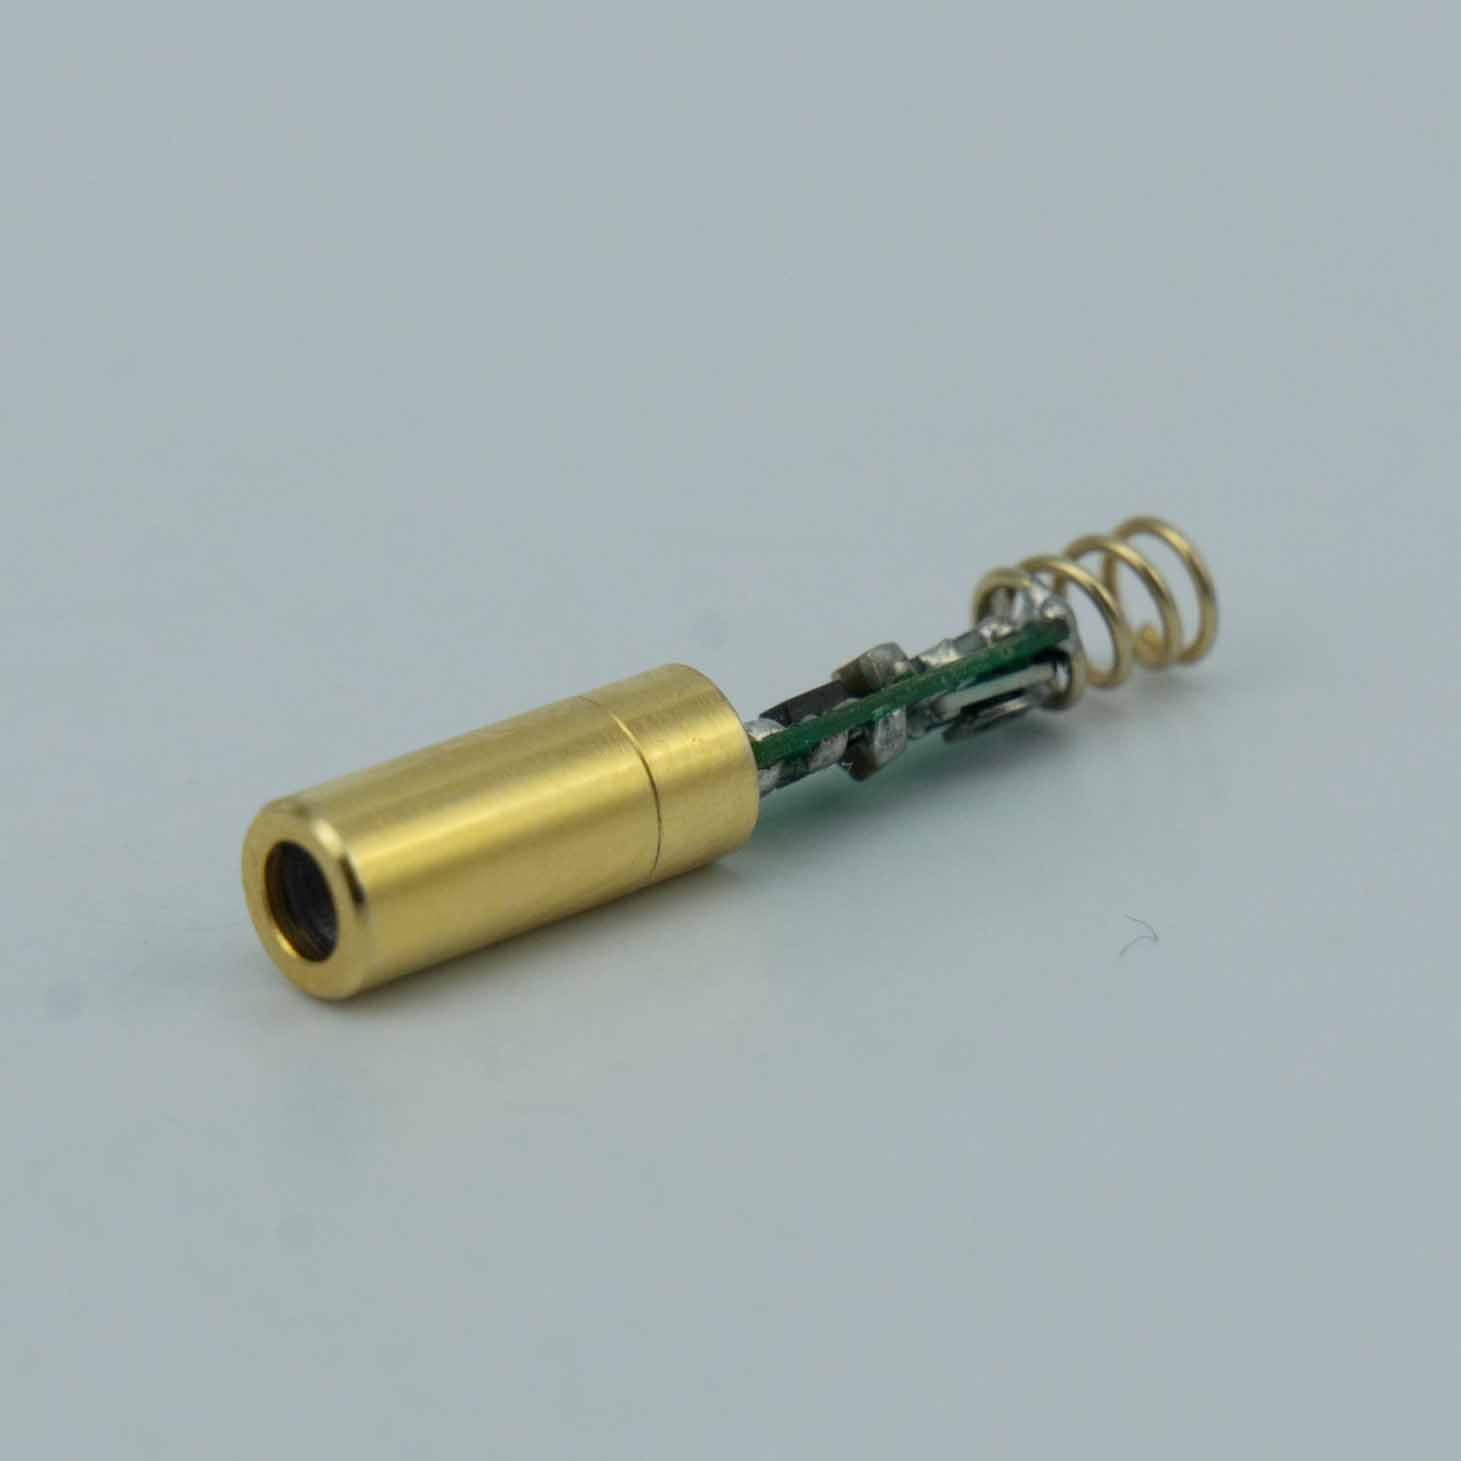 Minyatür Lazer Φ4mm 520nm 5mw Yeşil Nokta Lazer Modülü, Lazer Hedefleme Cihazları için Silah Lazer Sapları